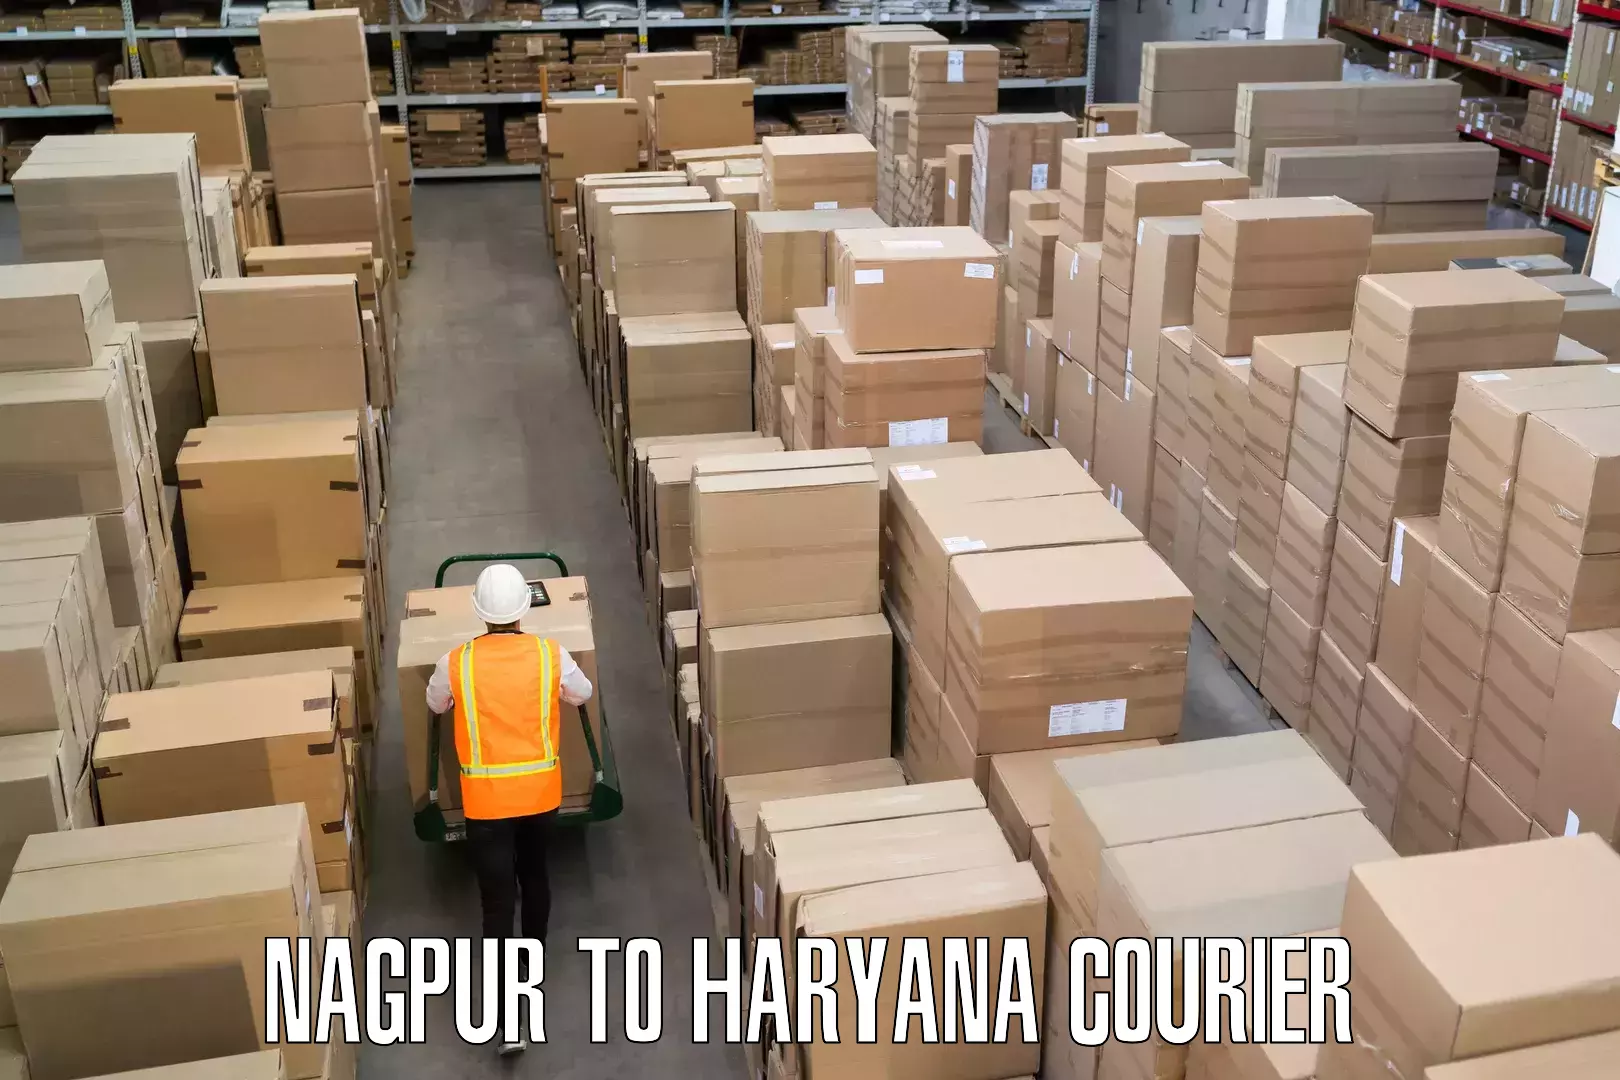 Holiday season luggage delivery Nagpur to Haryana